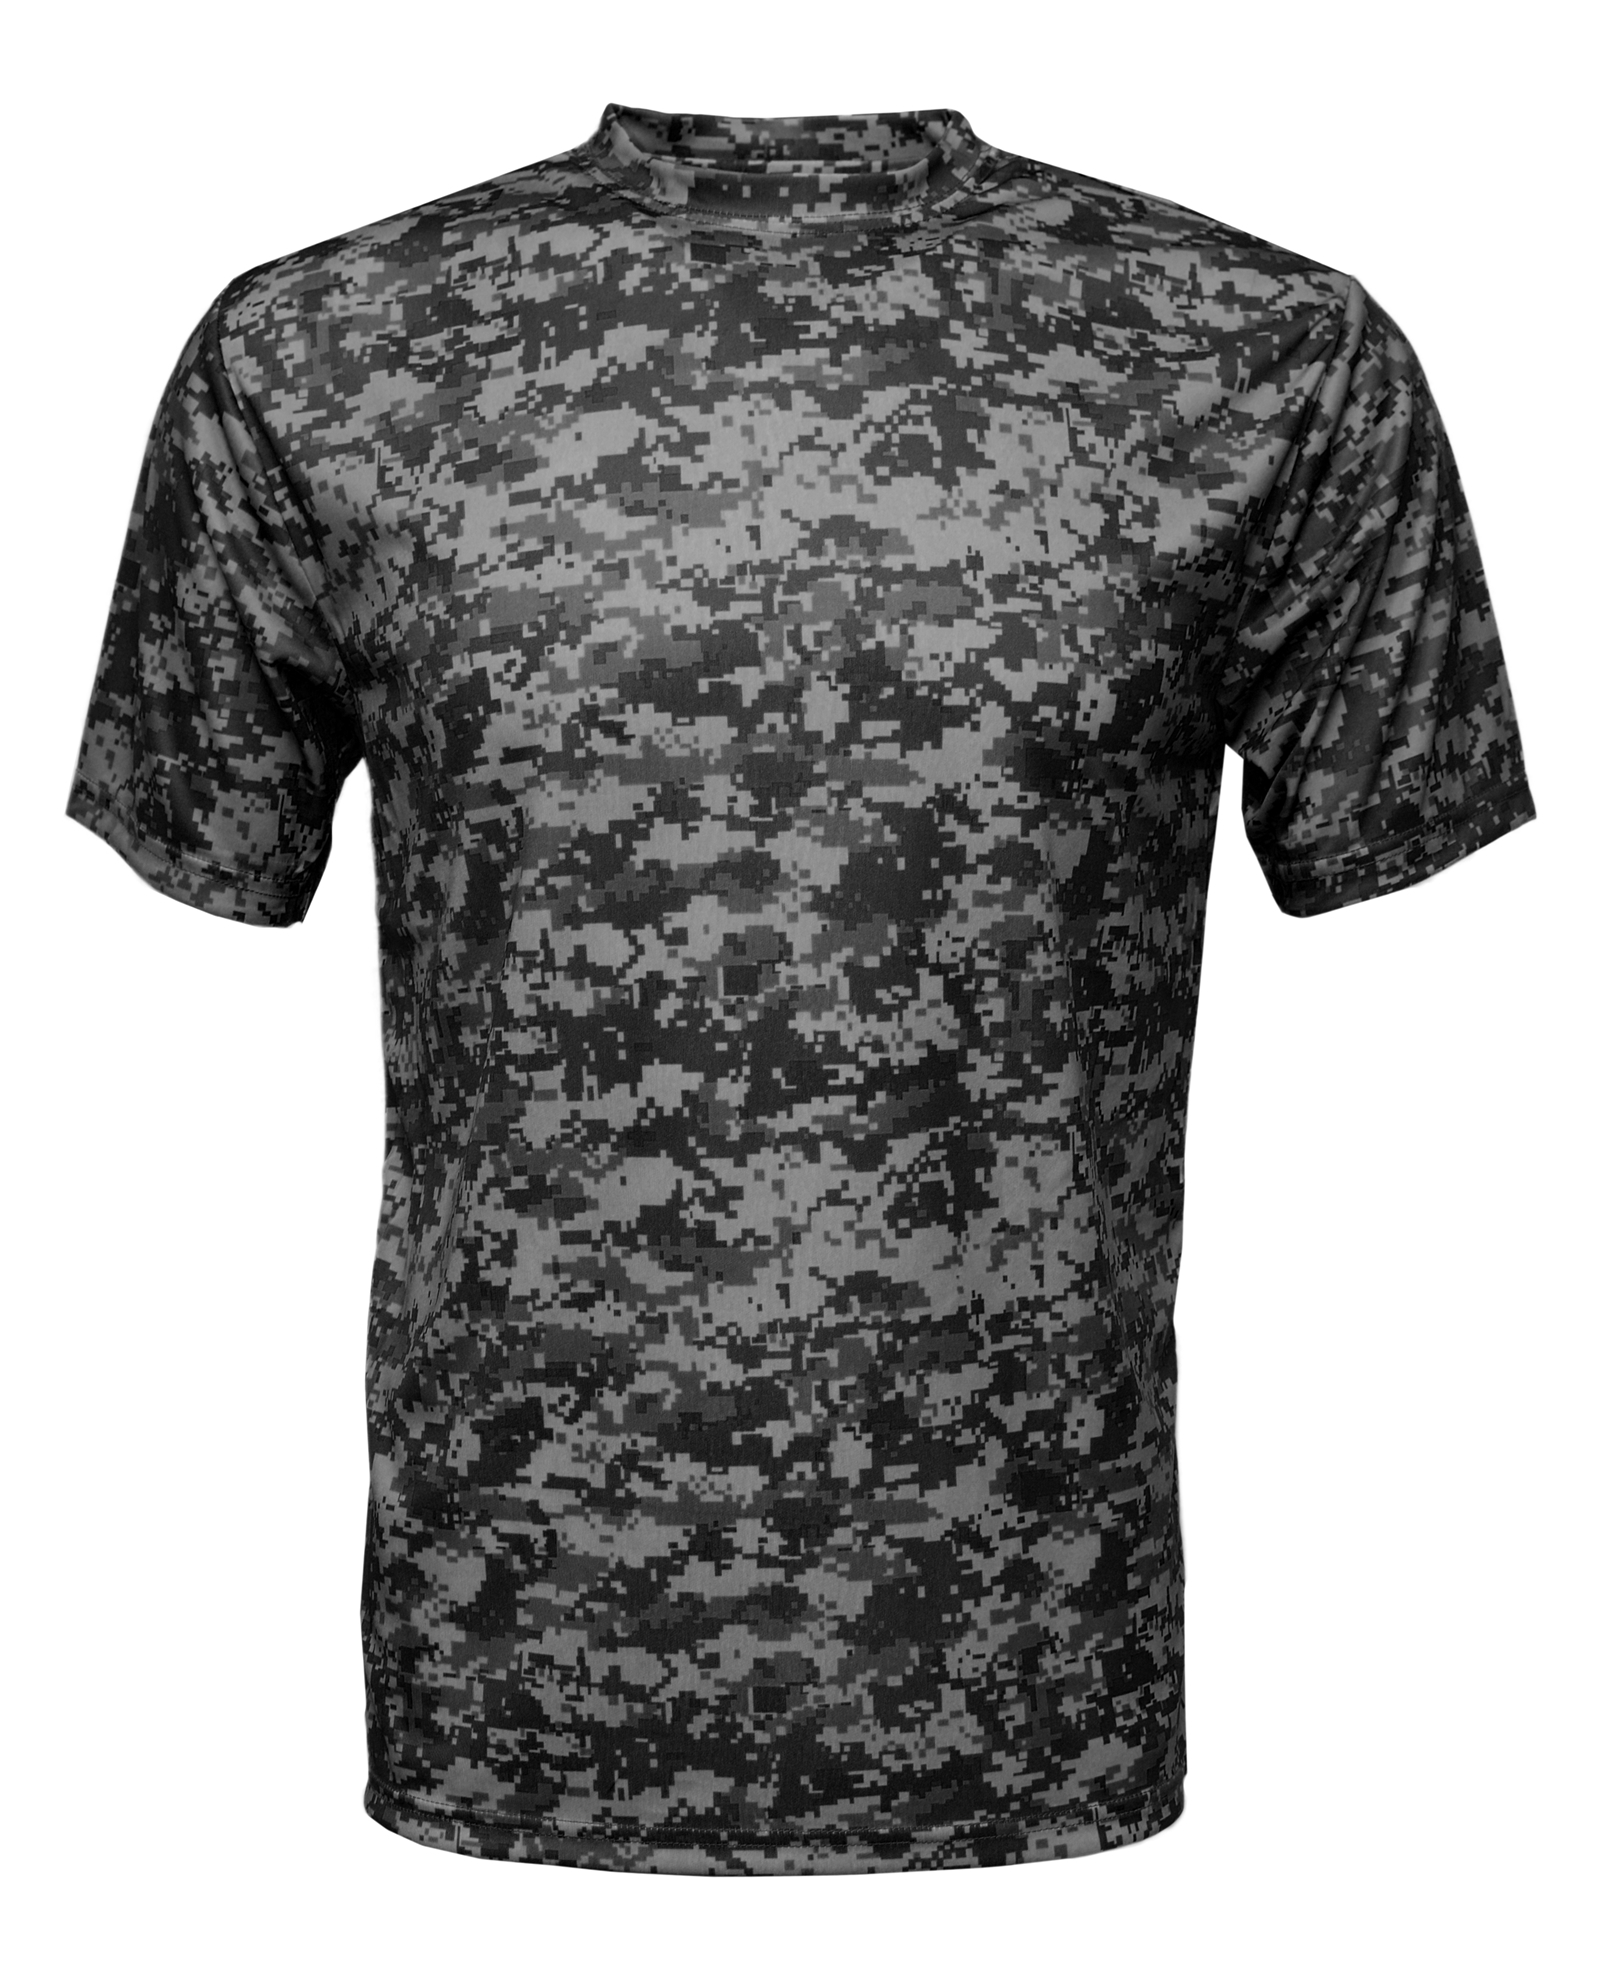 BAW Athletic Wear CM16Y - Youth Digital Camo Short Sleeve T-Shirt